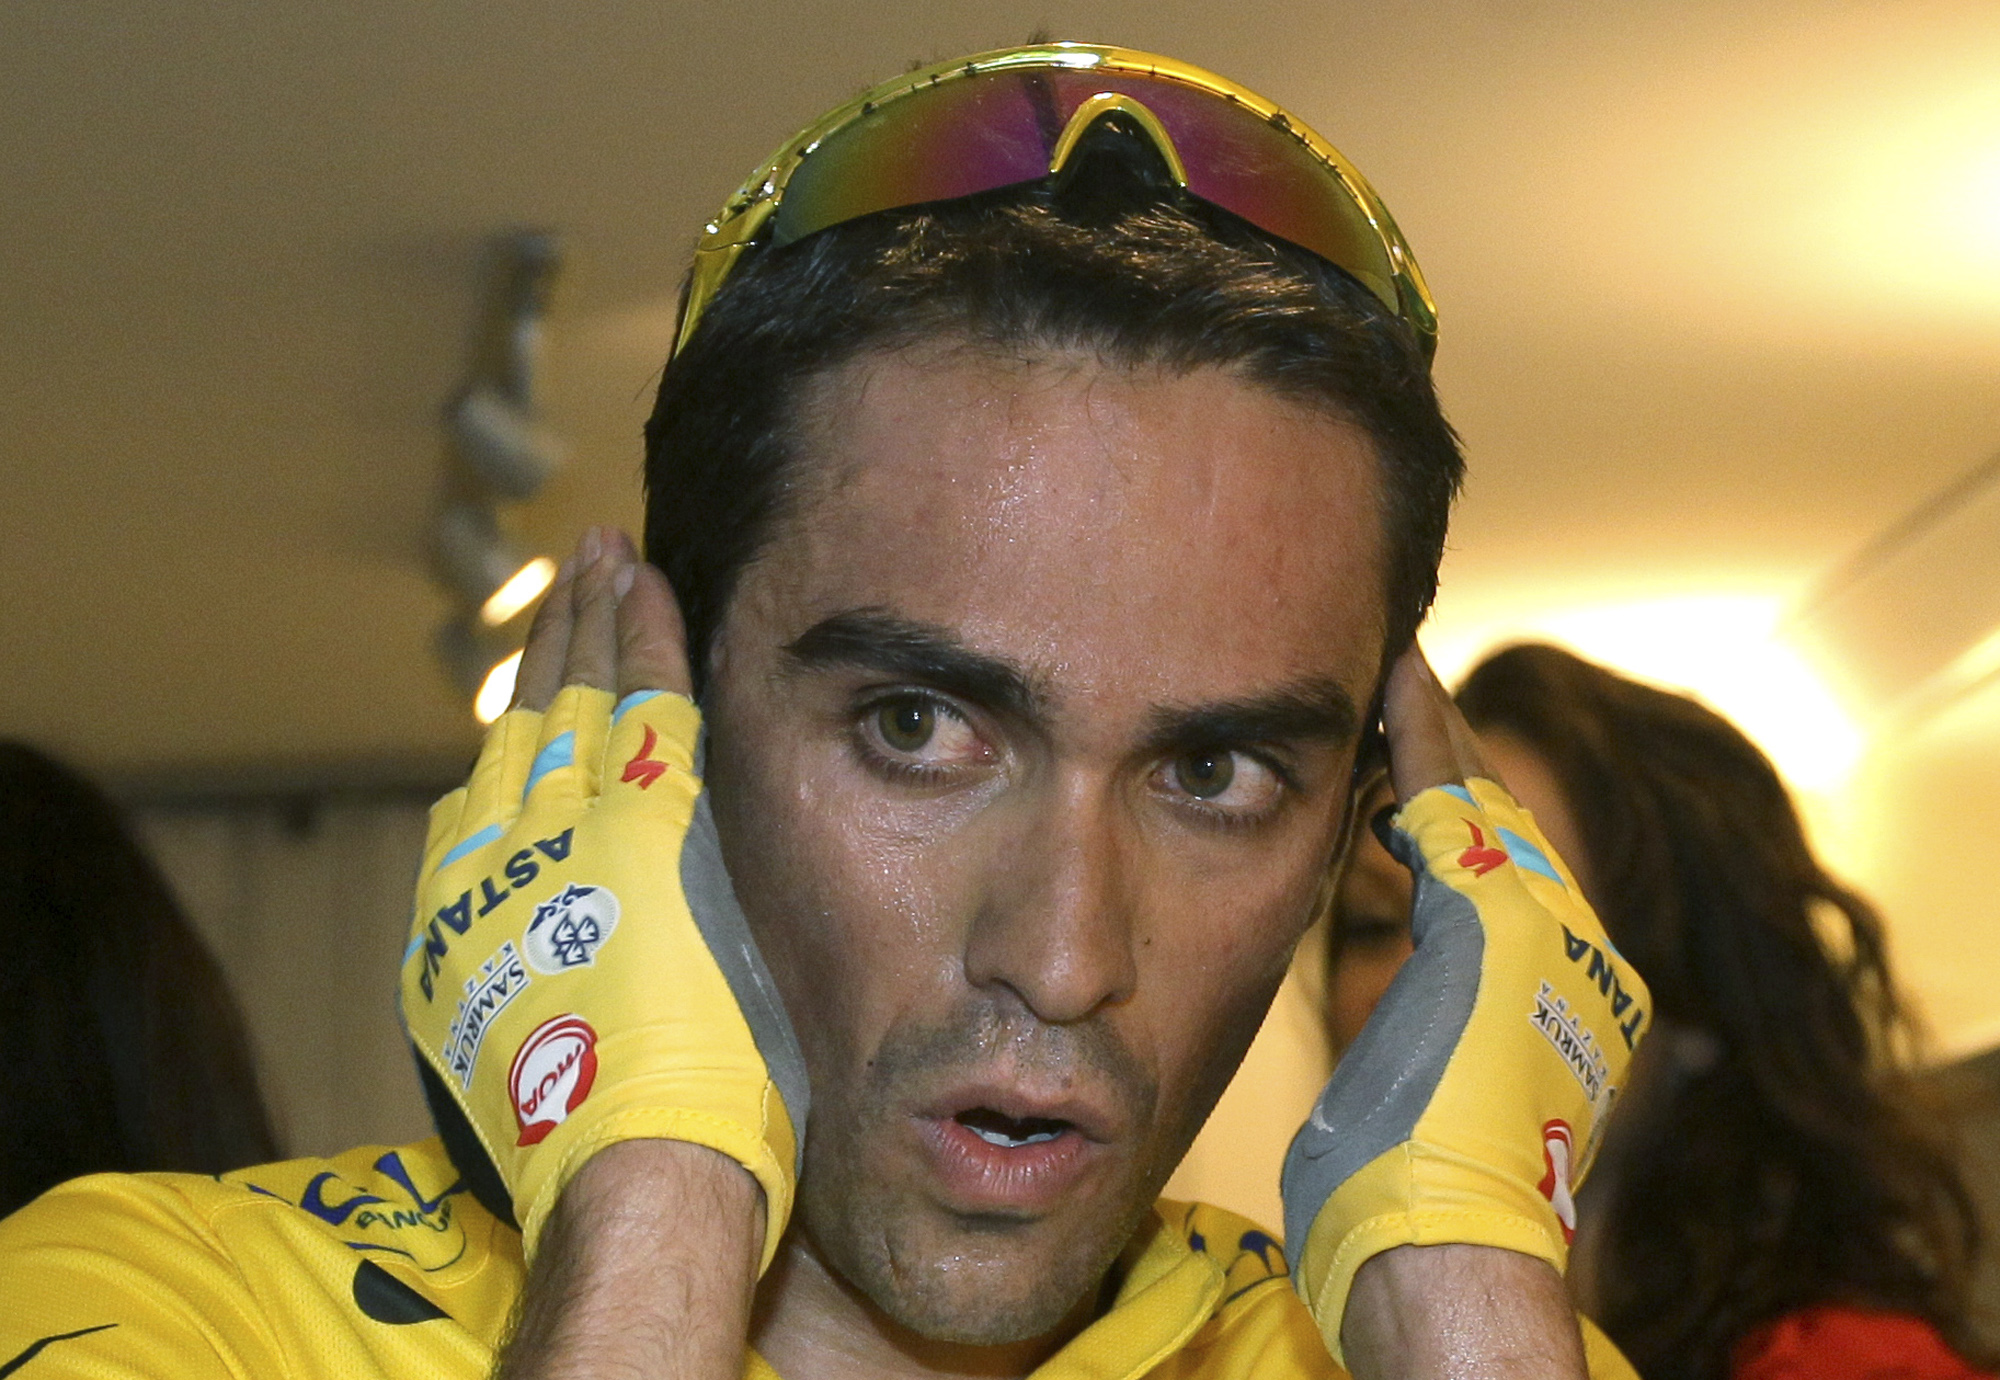 Cykel, Clenbuterol, Doping, Tour de France, Dopning, Alberto Contador, dopad